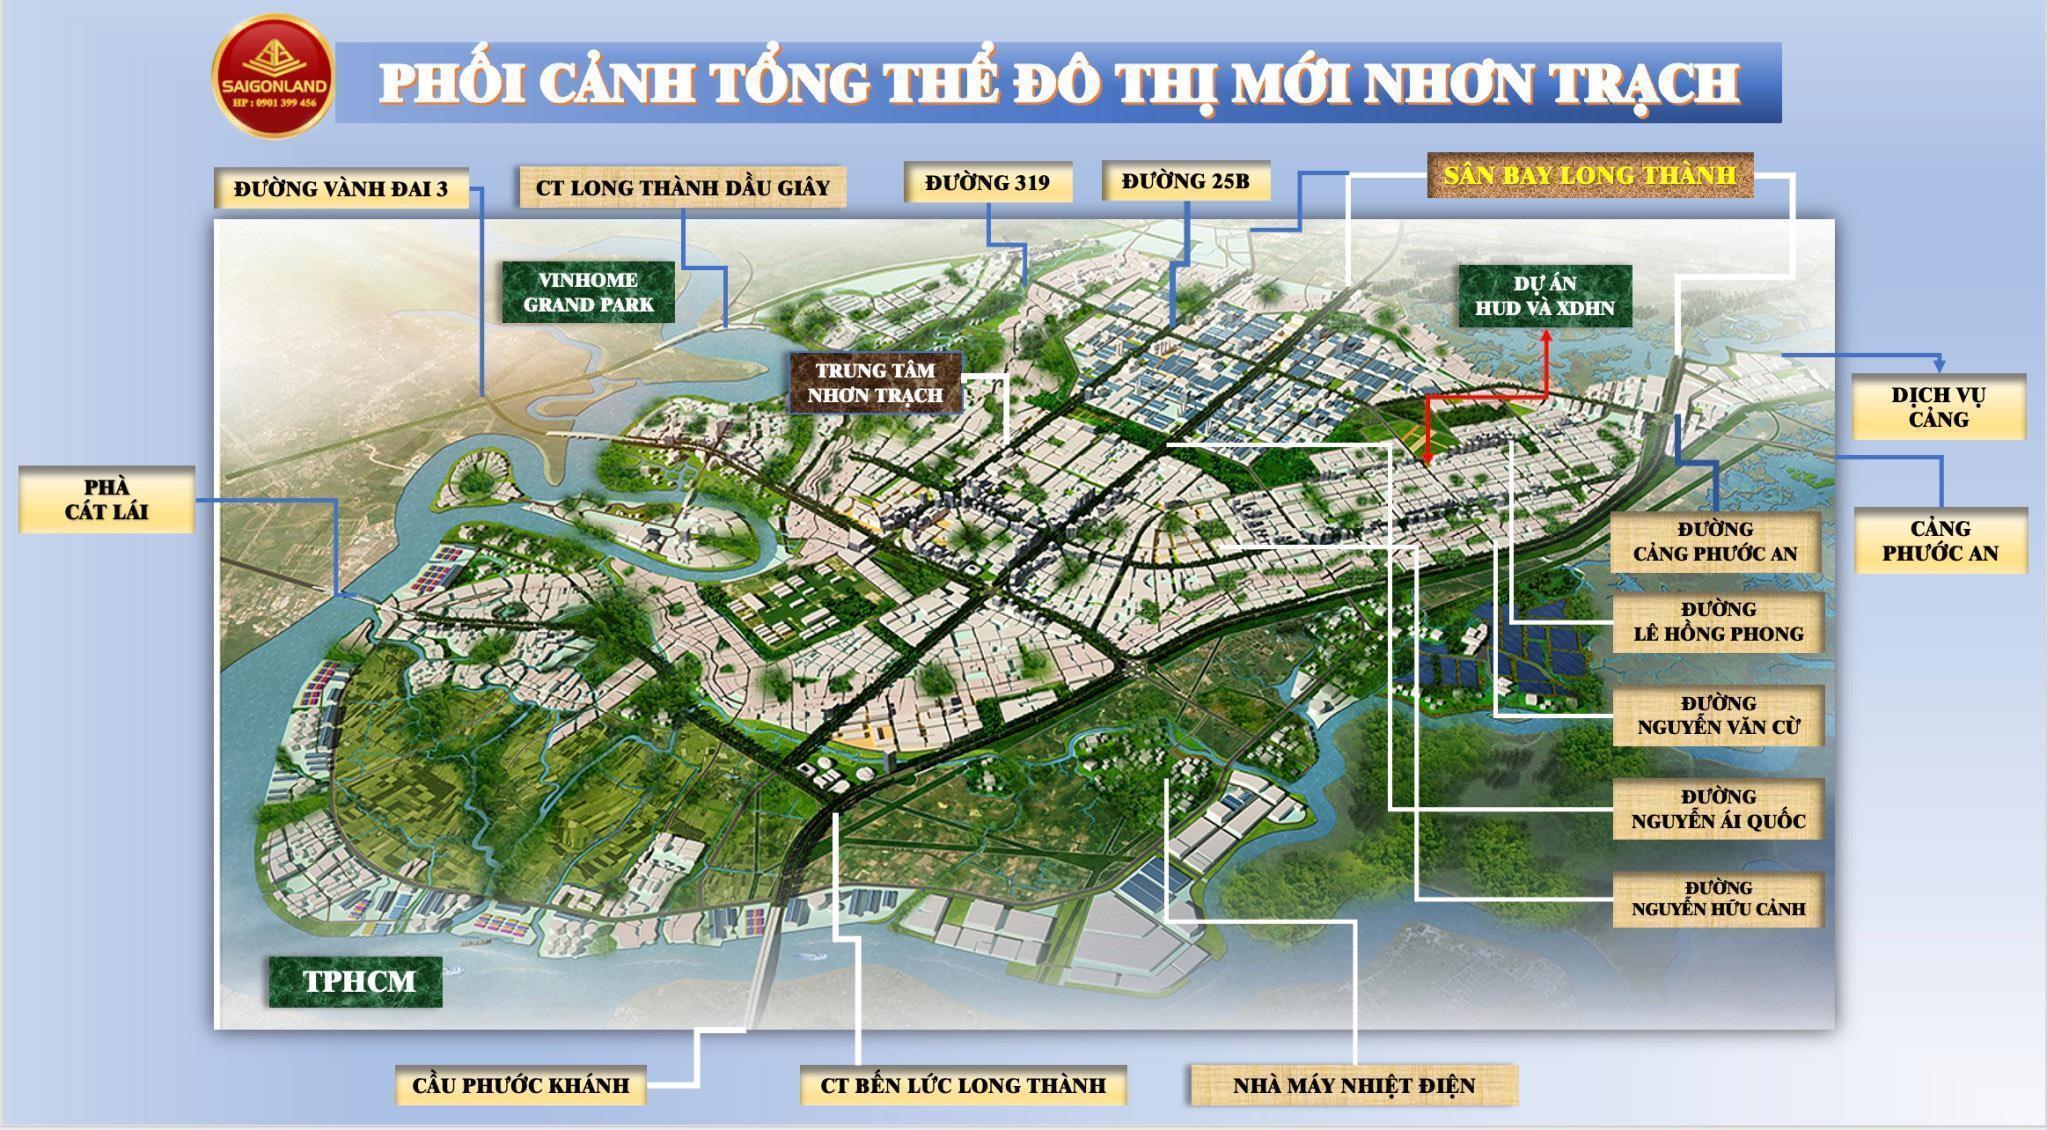 BĐS Saigonland Nhơn Trạch chuyên Mua bán Đất Nền Nhơn Trạch - Hud - XDHN - ECOSUN - Đất nền sân bay - Ảnh 3